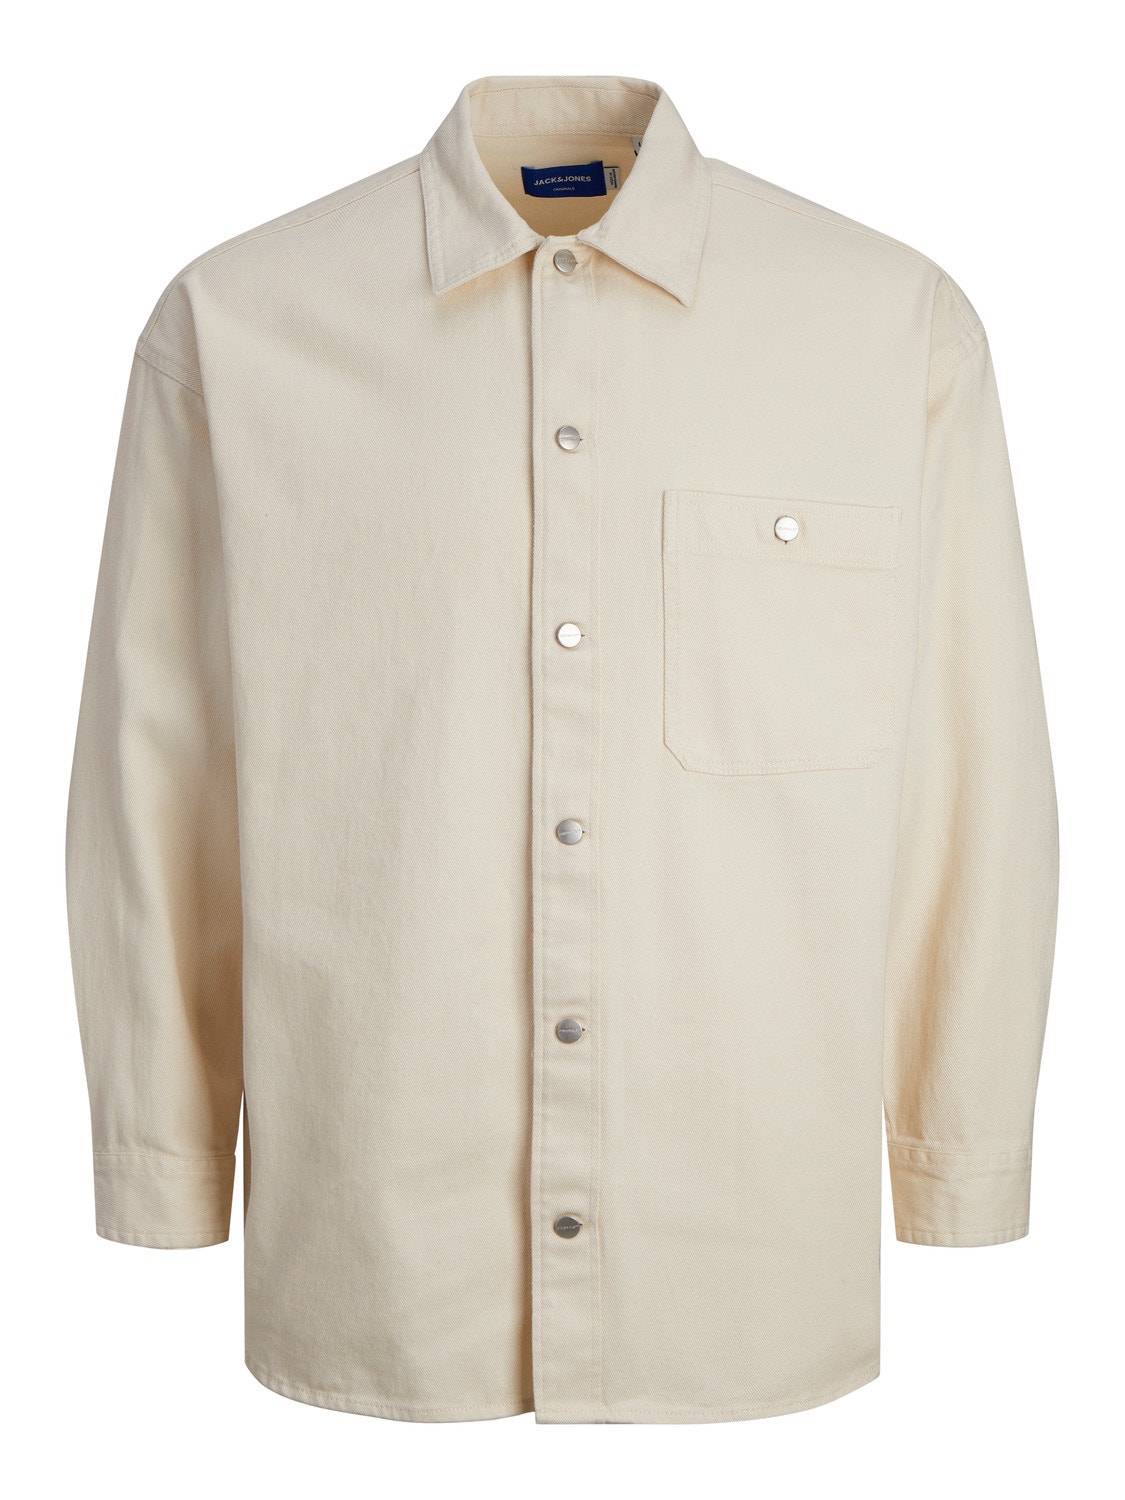 Jack & Jones Wide Fit Denim Shirt -Buttercream - 12250602